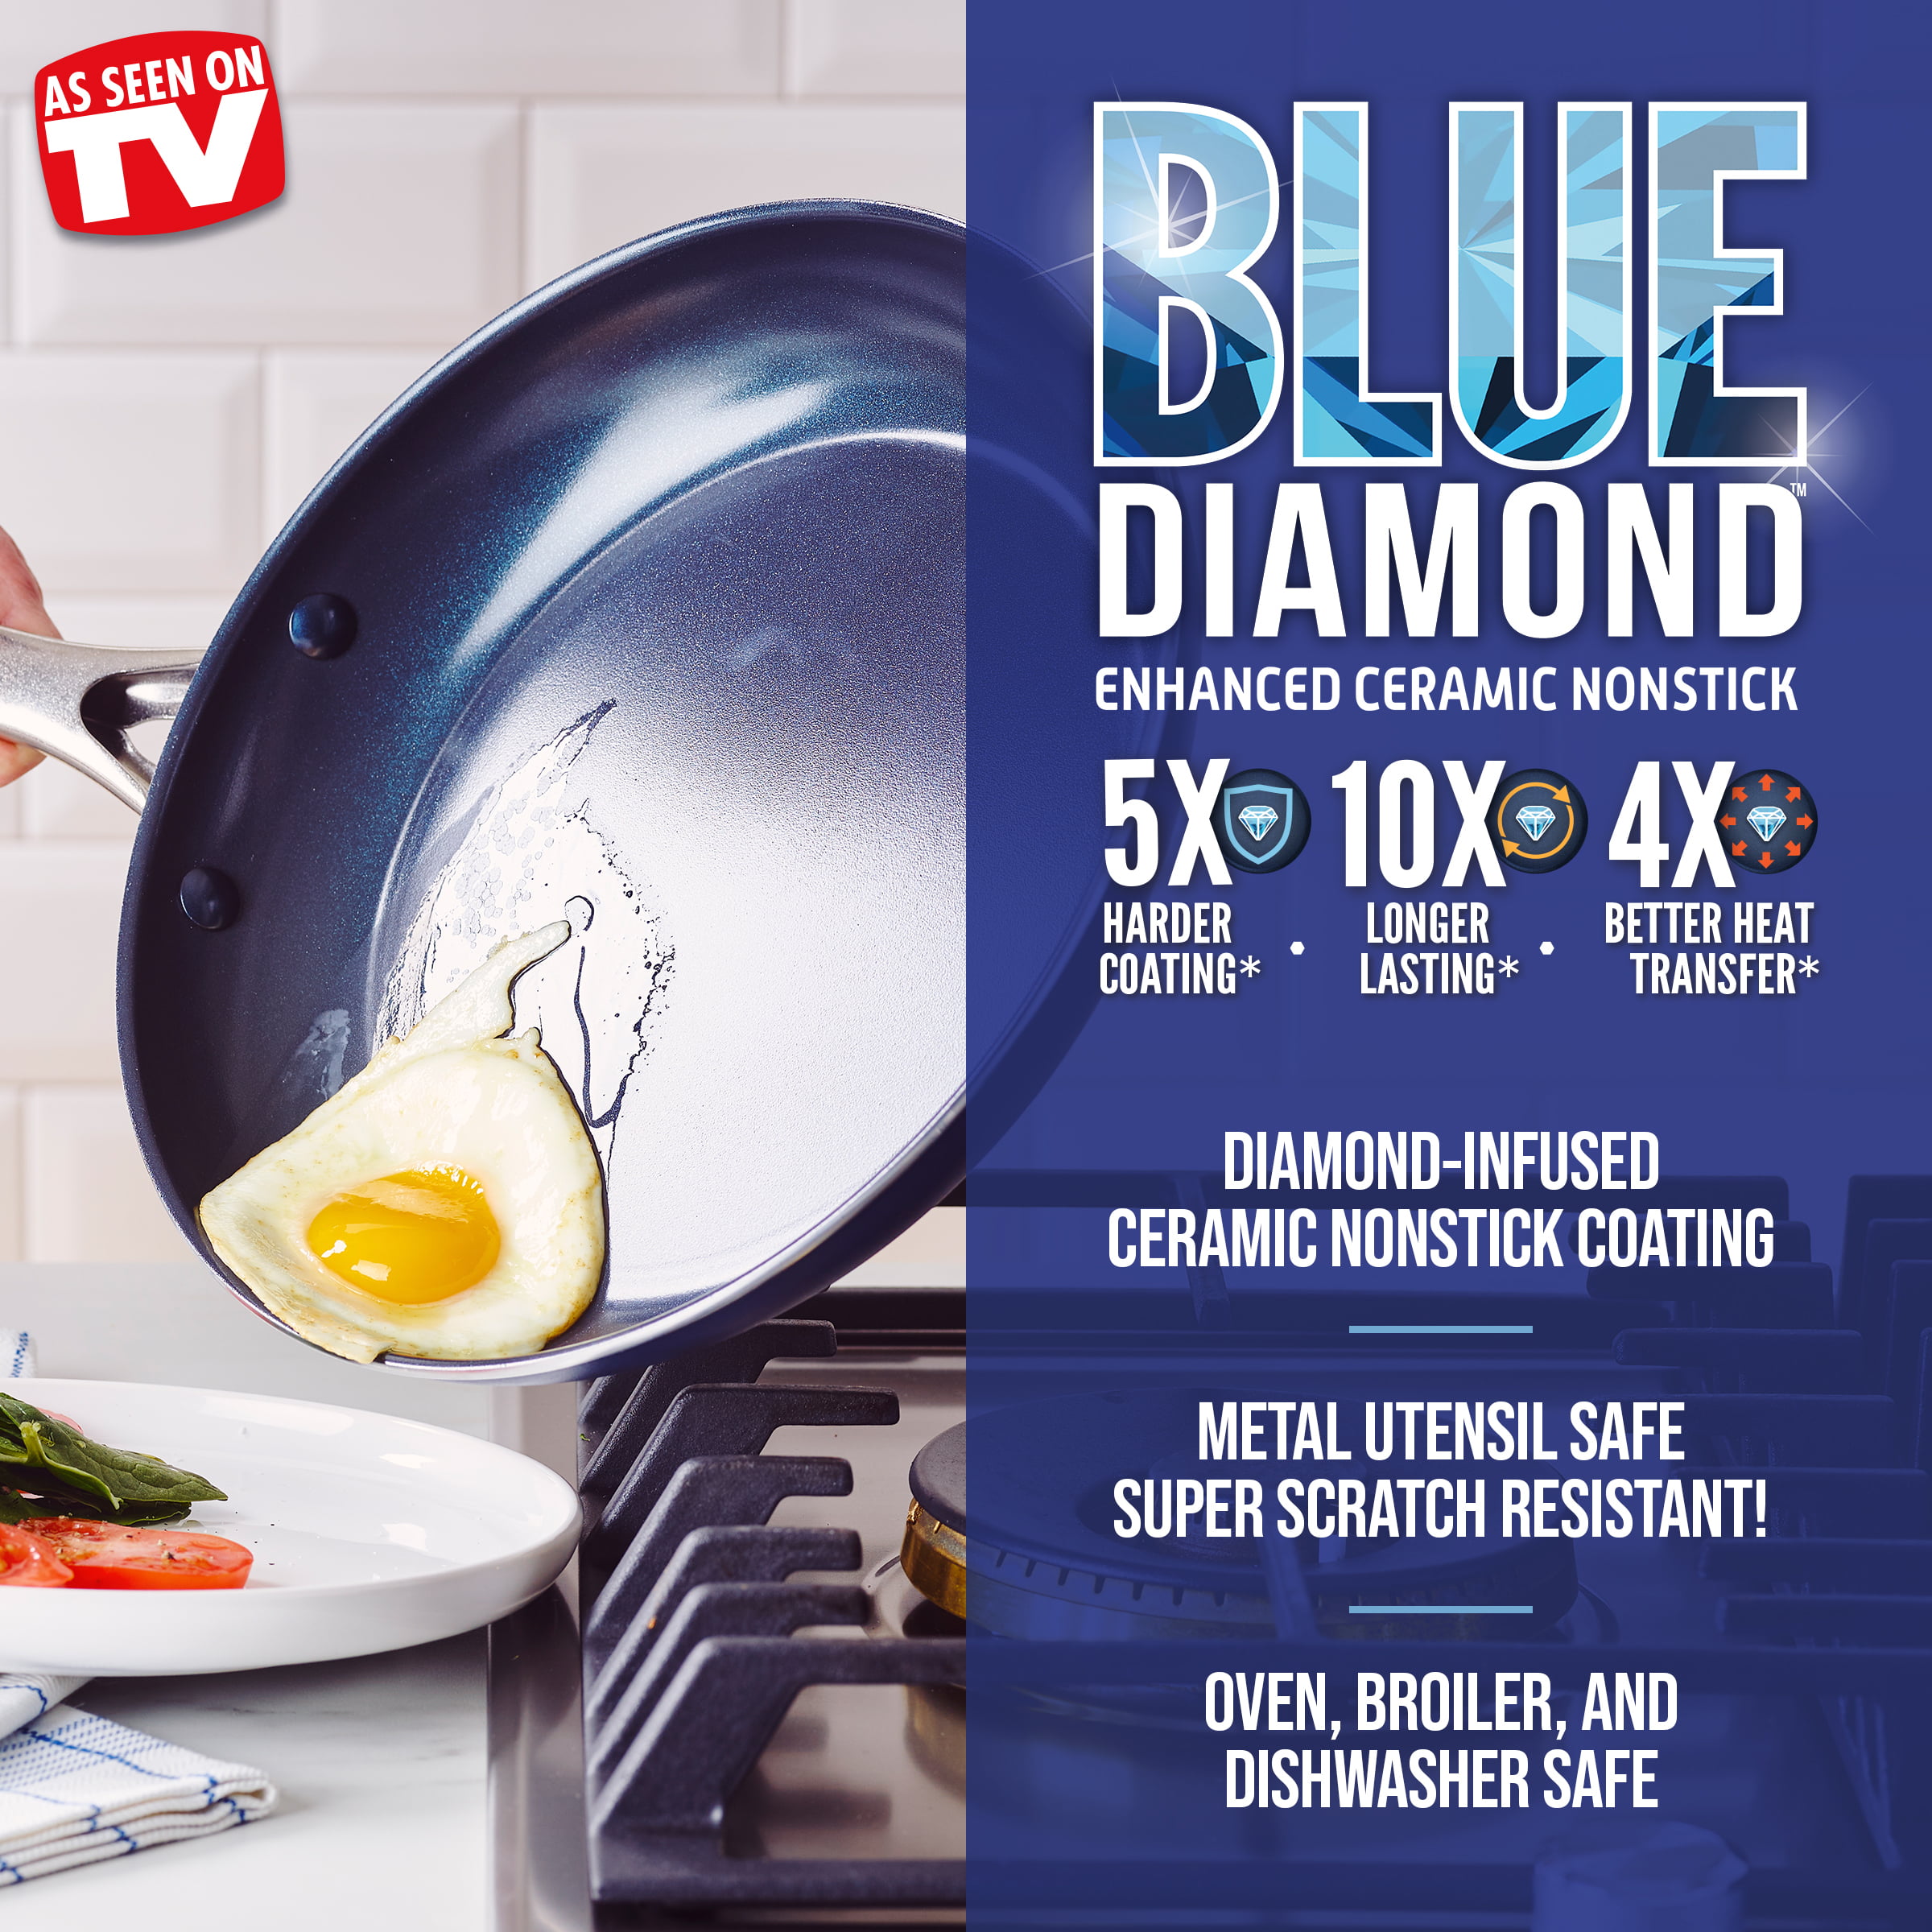 Blue Diamond Classic 20-Piece Cookware Set